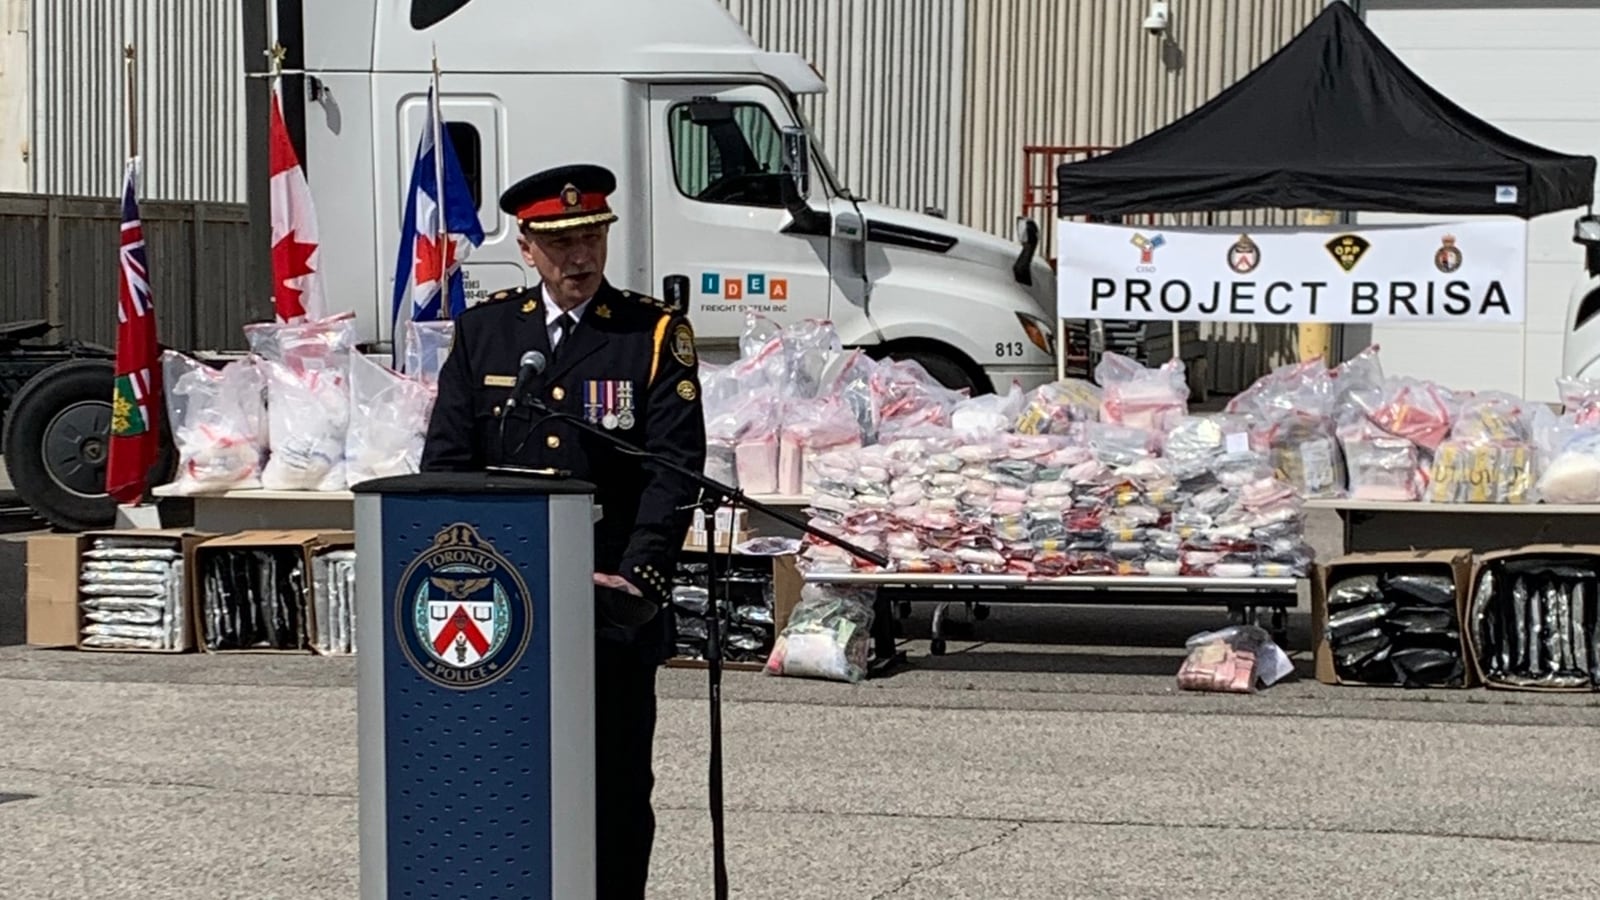 Toronto Police seize 1,000 kg drugs in largestever bust; 20 arrested